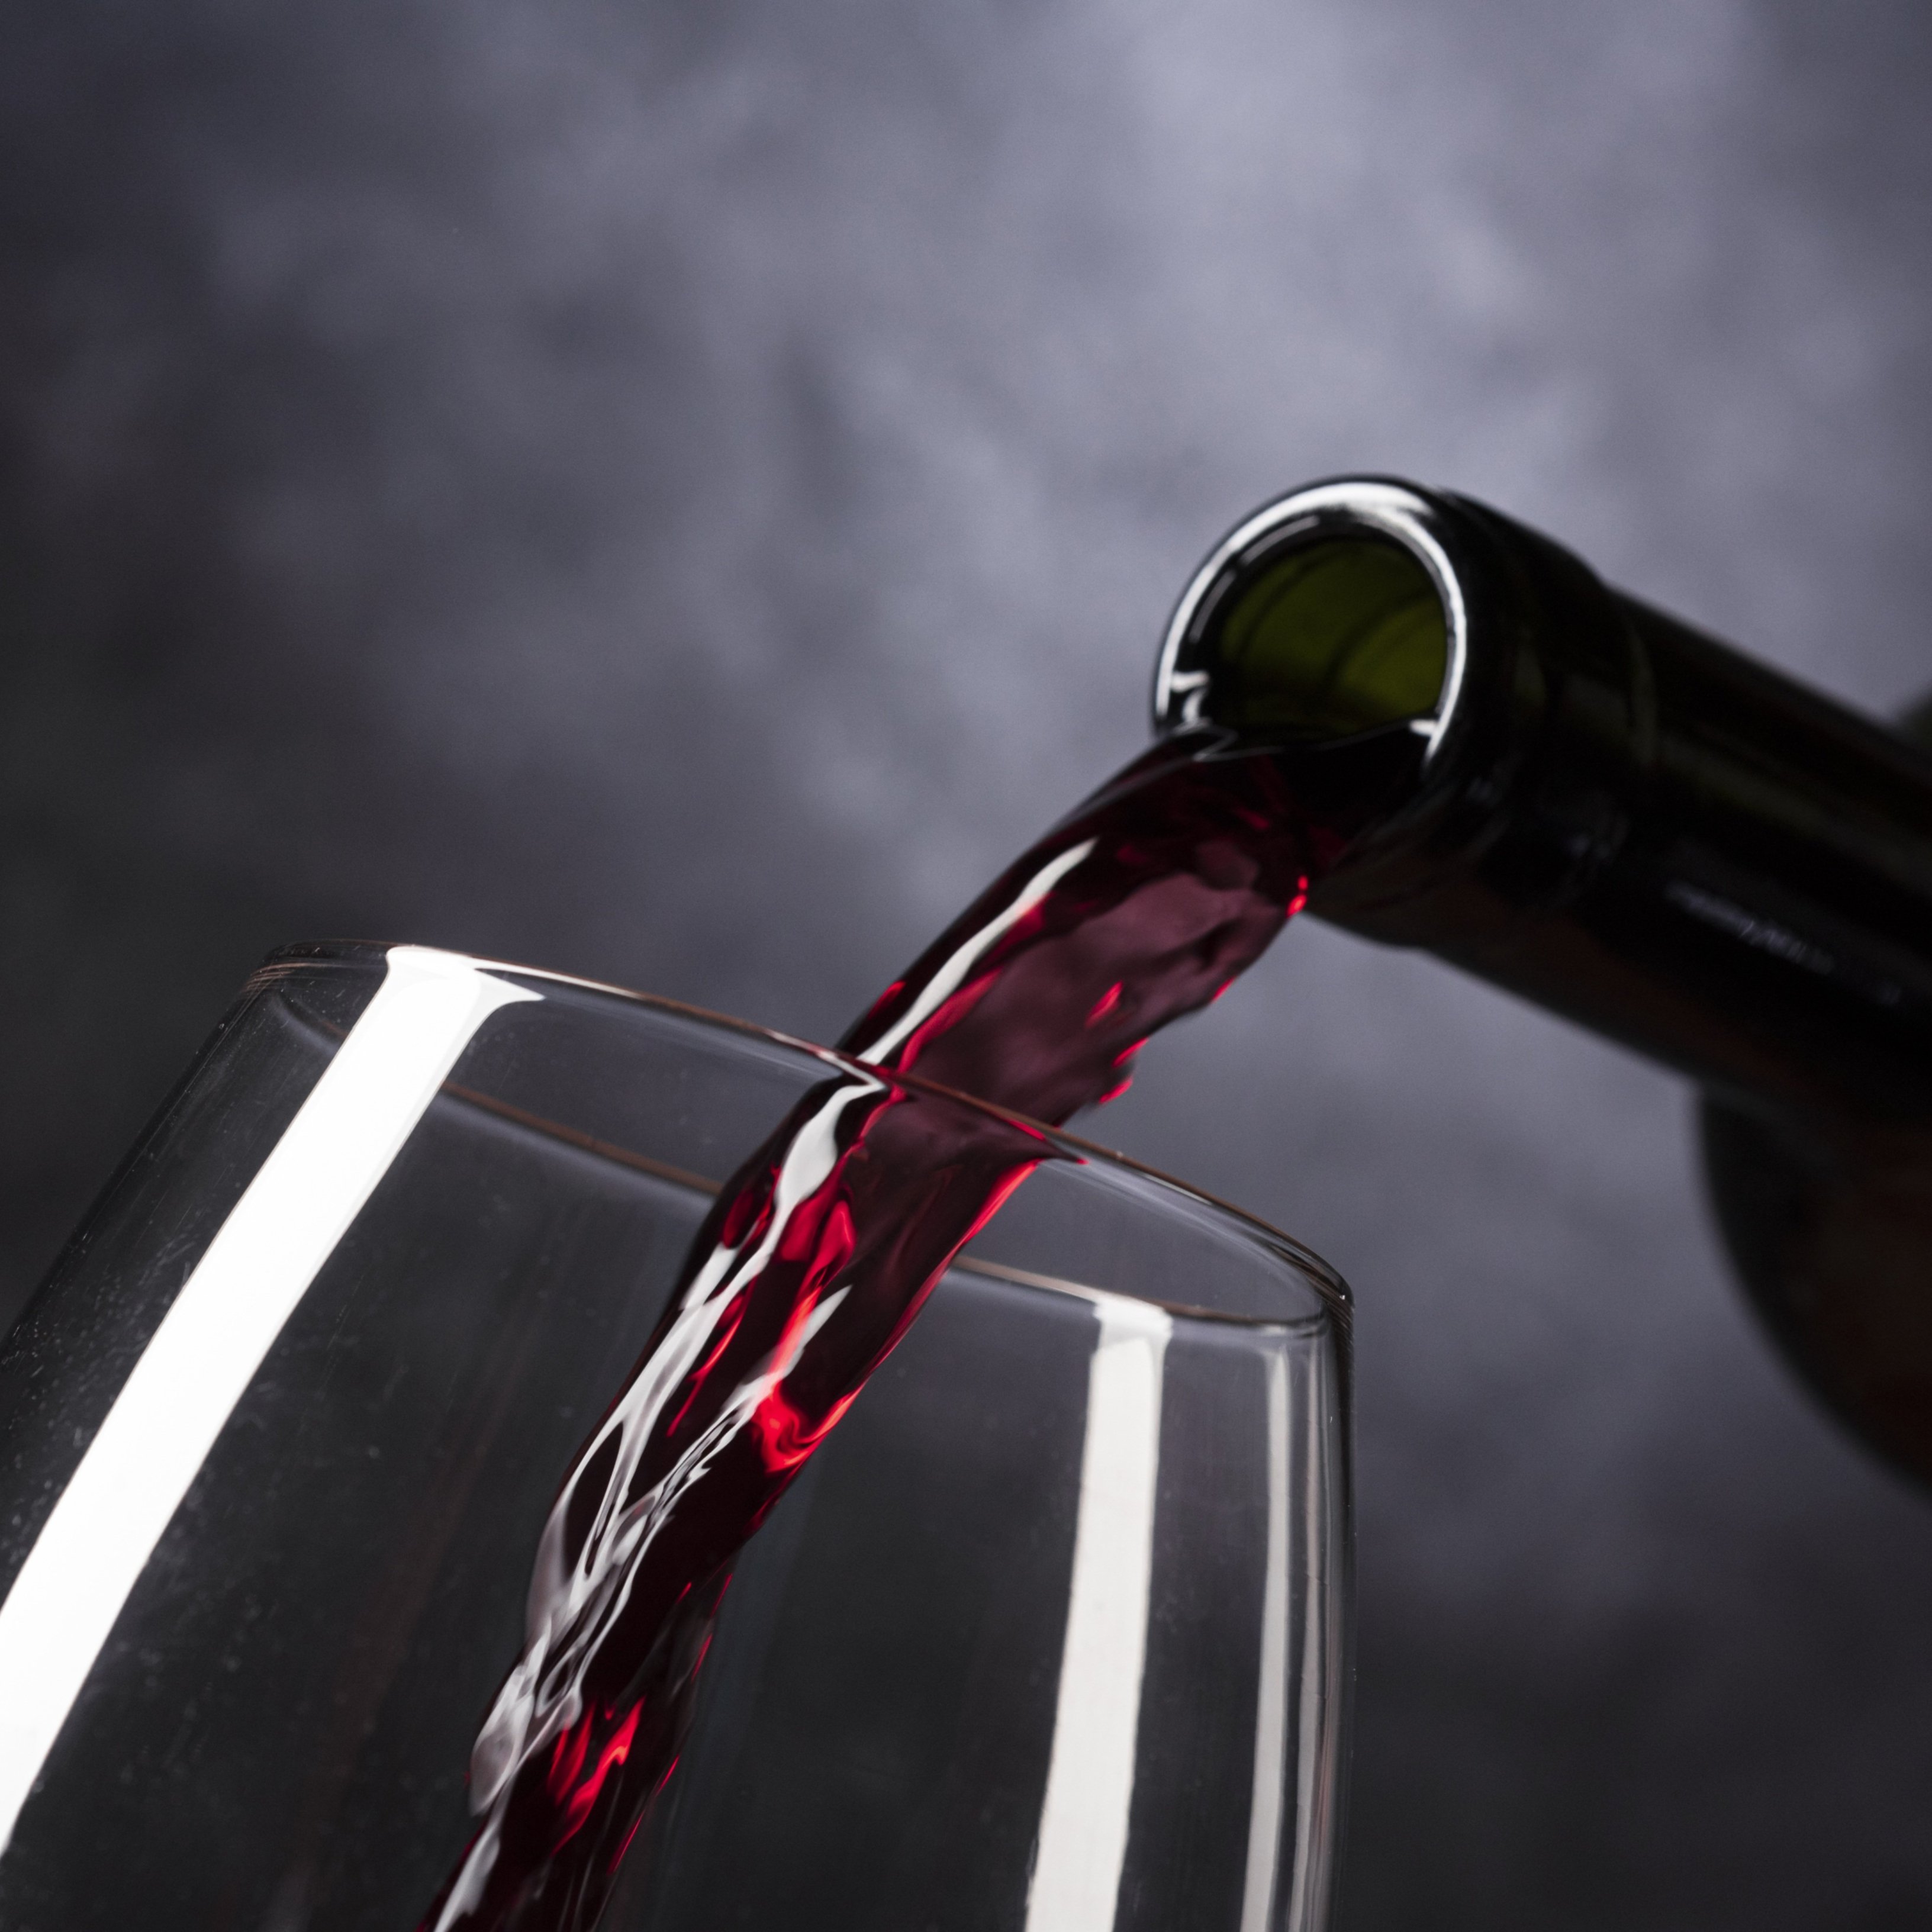 Tomar un vaso de alcohol al día podría aumentar el riesgo de arritmia